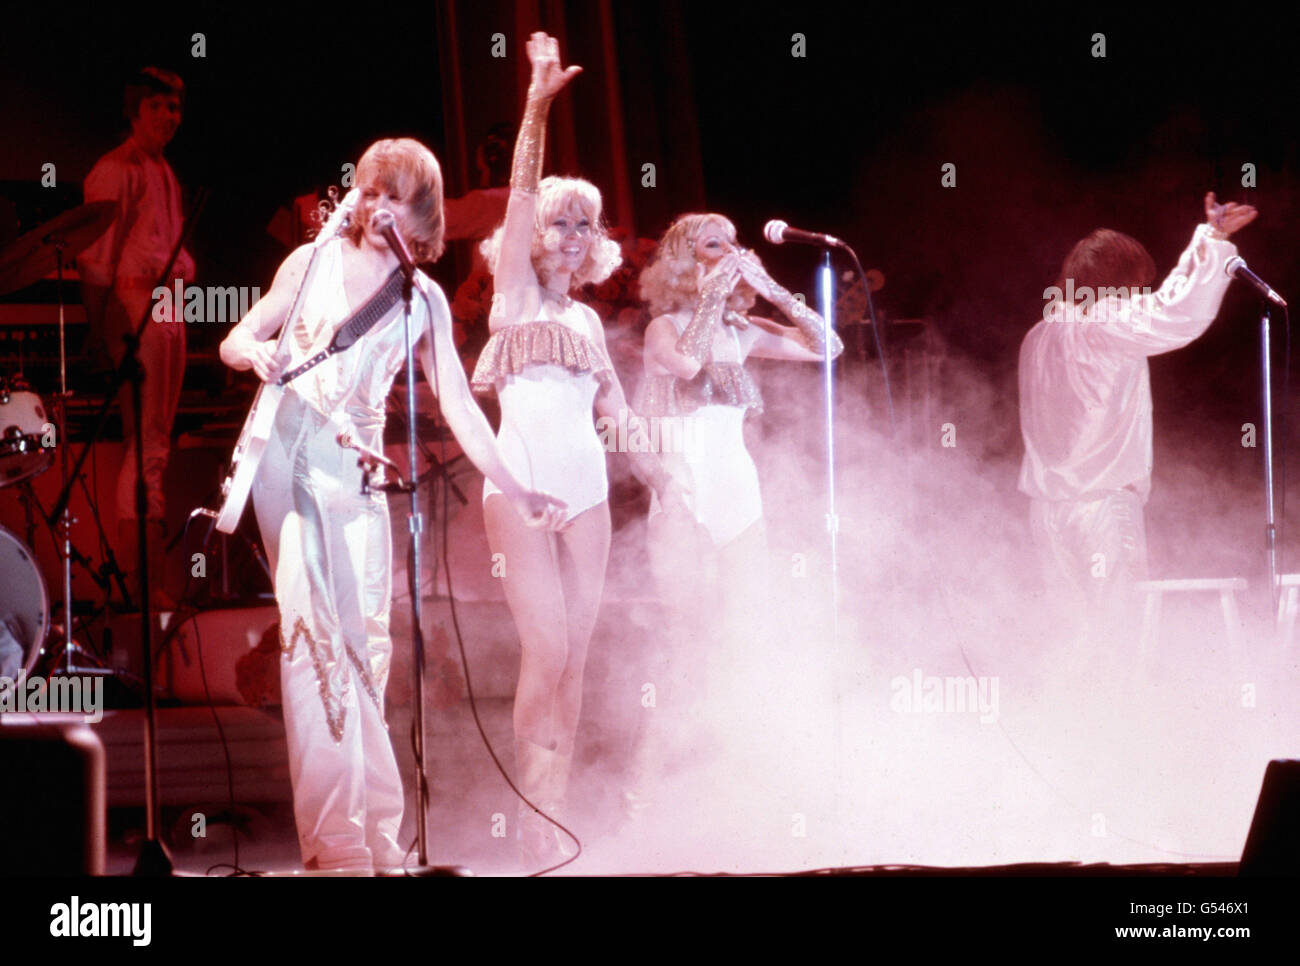 Music - ABBA - European & Australian Tour - Gothenburg, Sweden Stock Photo  - Alamy